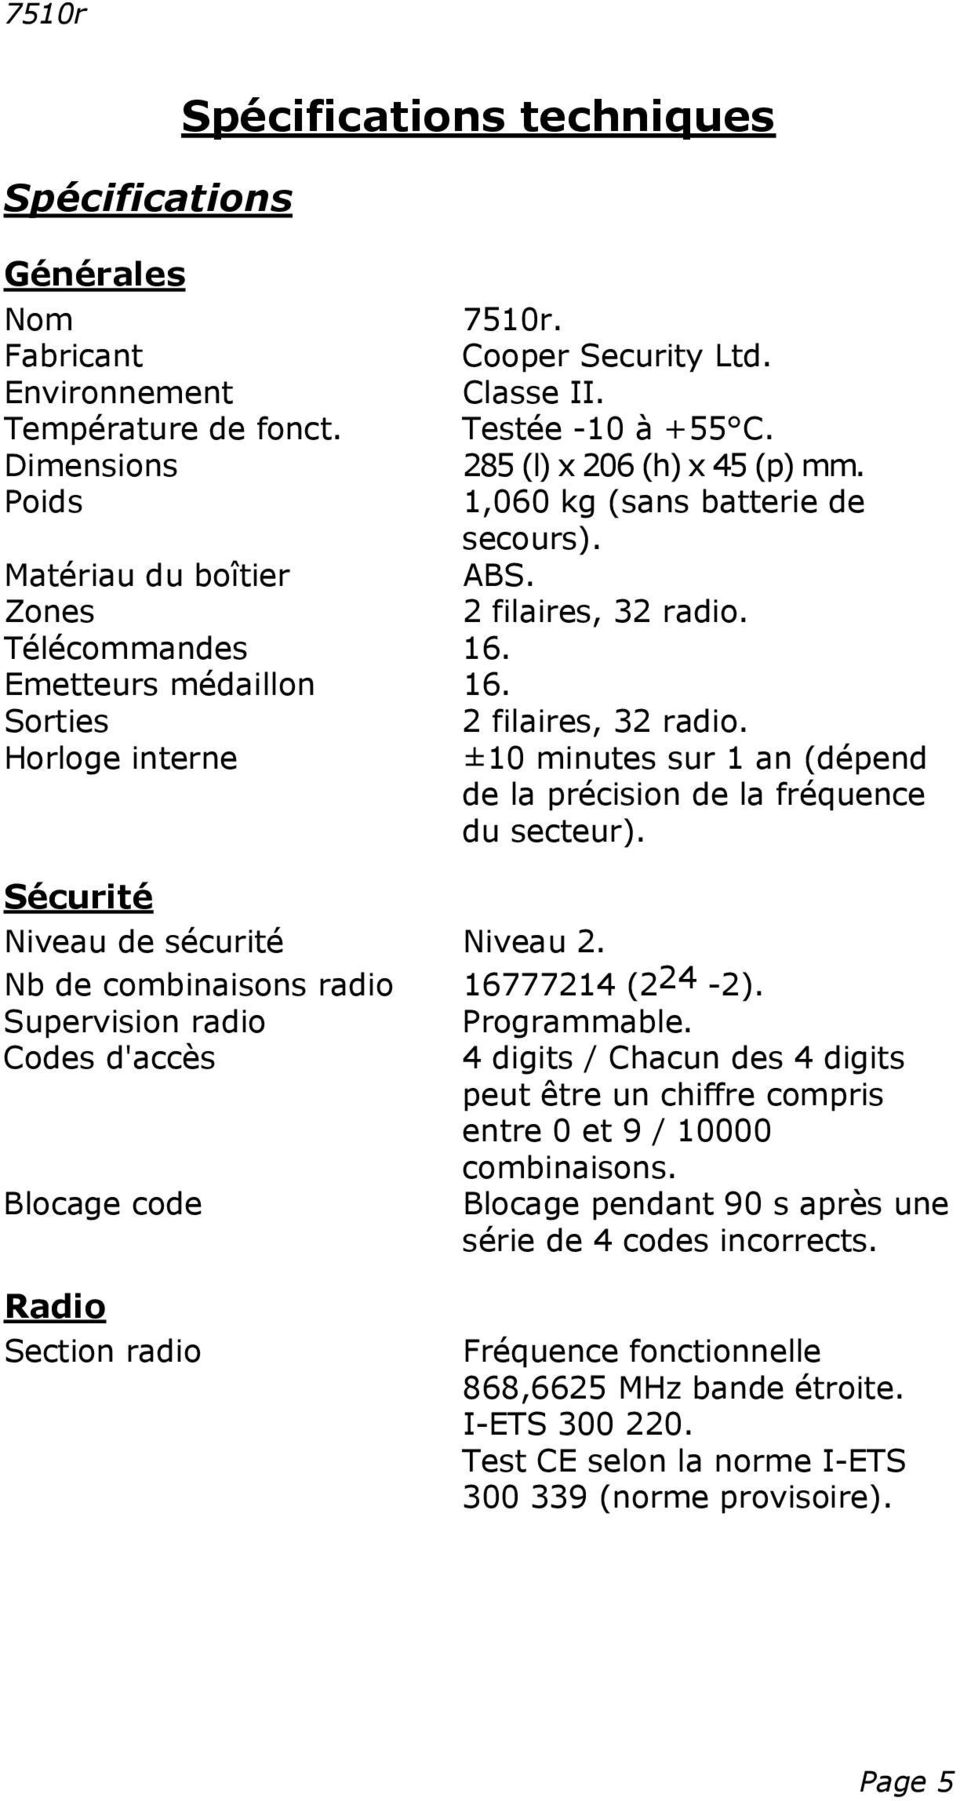 Sorties 2 filaires, 32 radio. Horloge interne ±10 minutes sur 1 an (dépend de la précision de la fréquence du secteur). Sécurité Niveau de sécurité Niveau 2. Nb de combinaisons radio 16777214 (224-2).